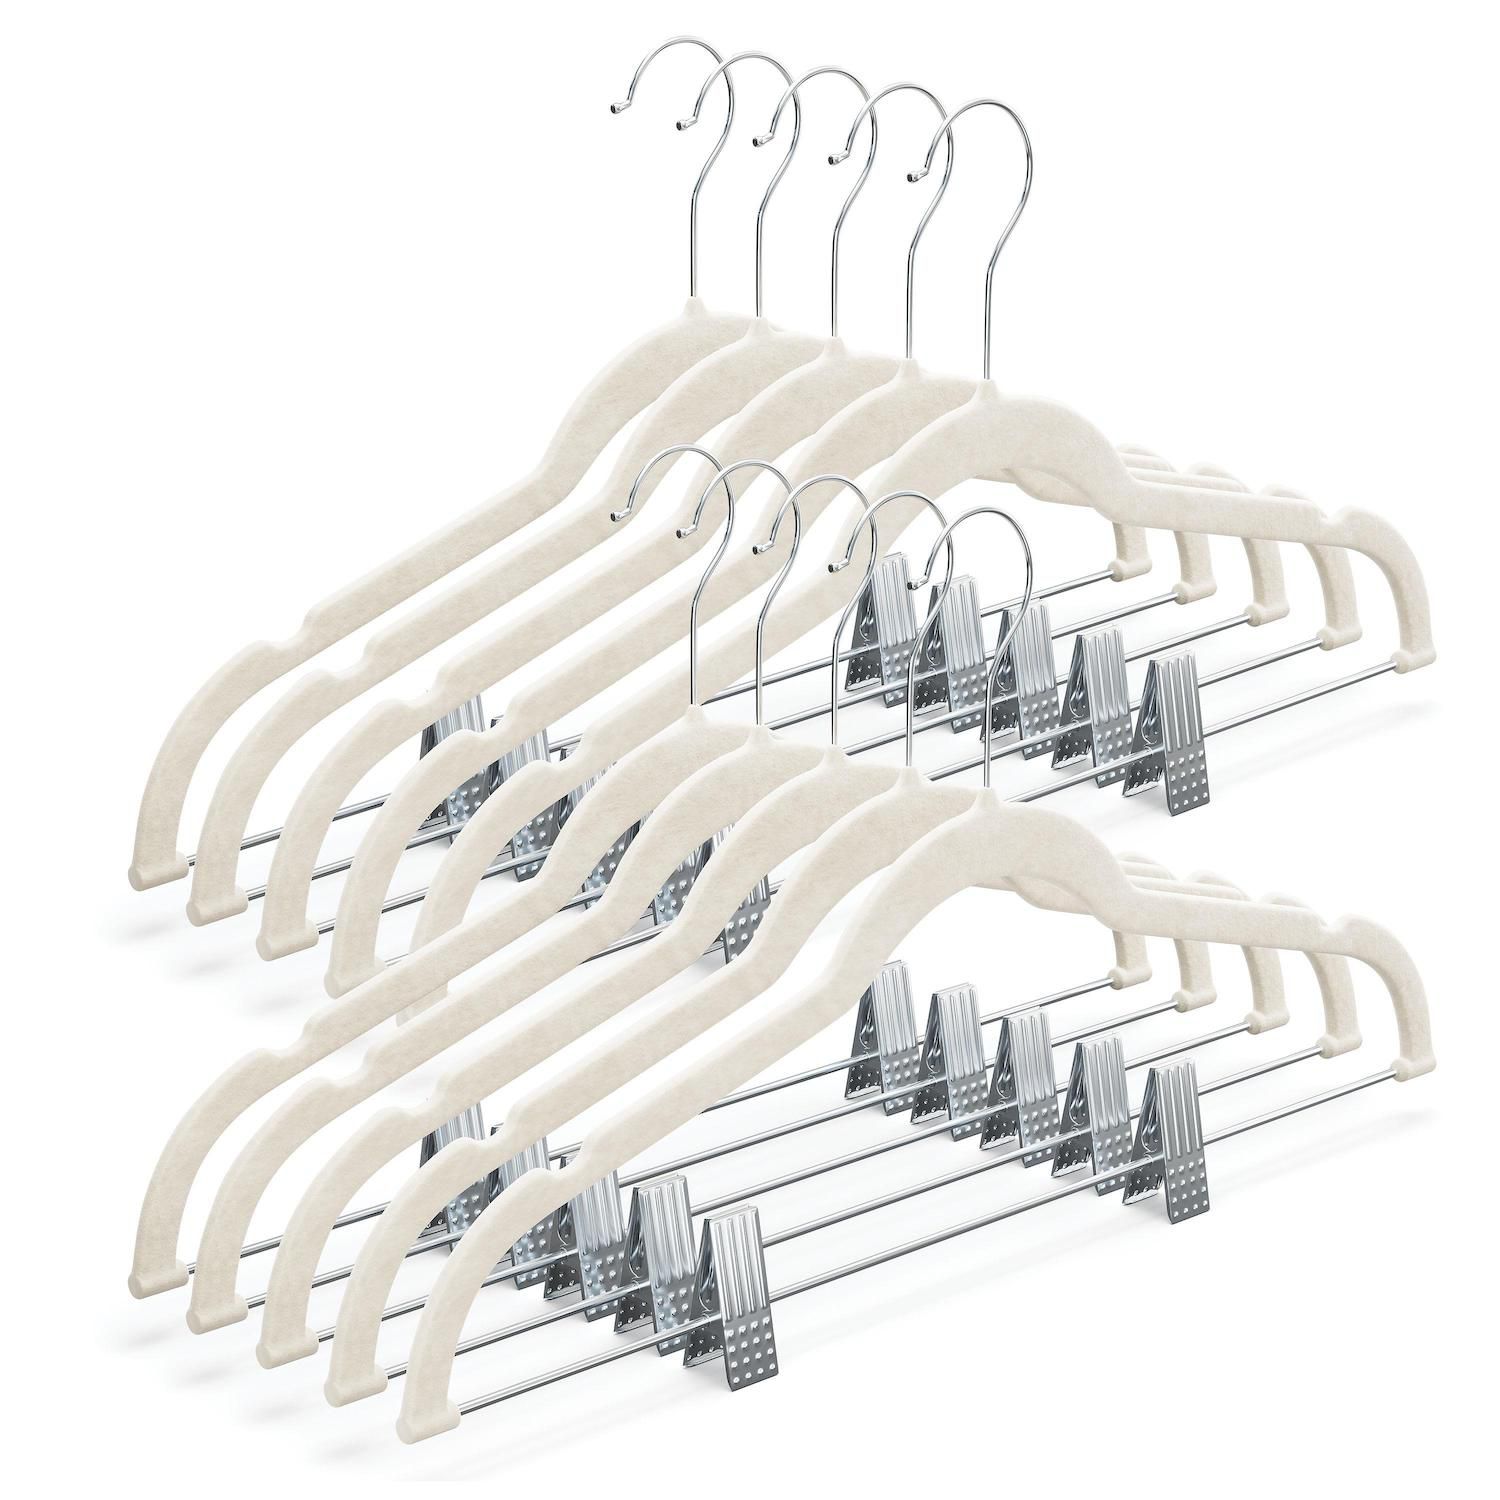 Rubber Coated Plastic Hangers, 50pk Non Slip Plastic Coat Hangers